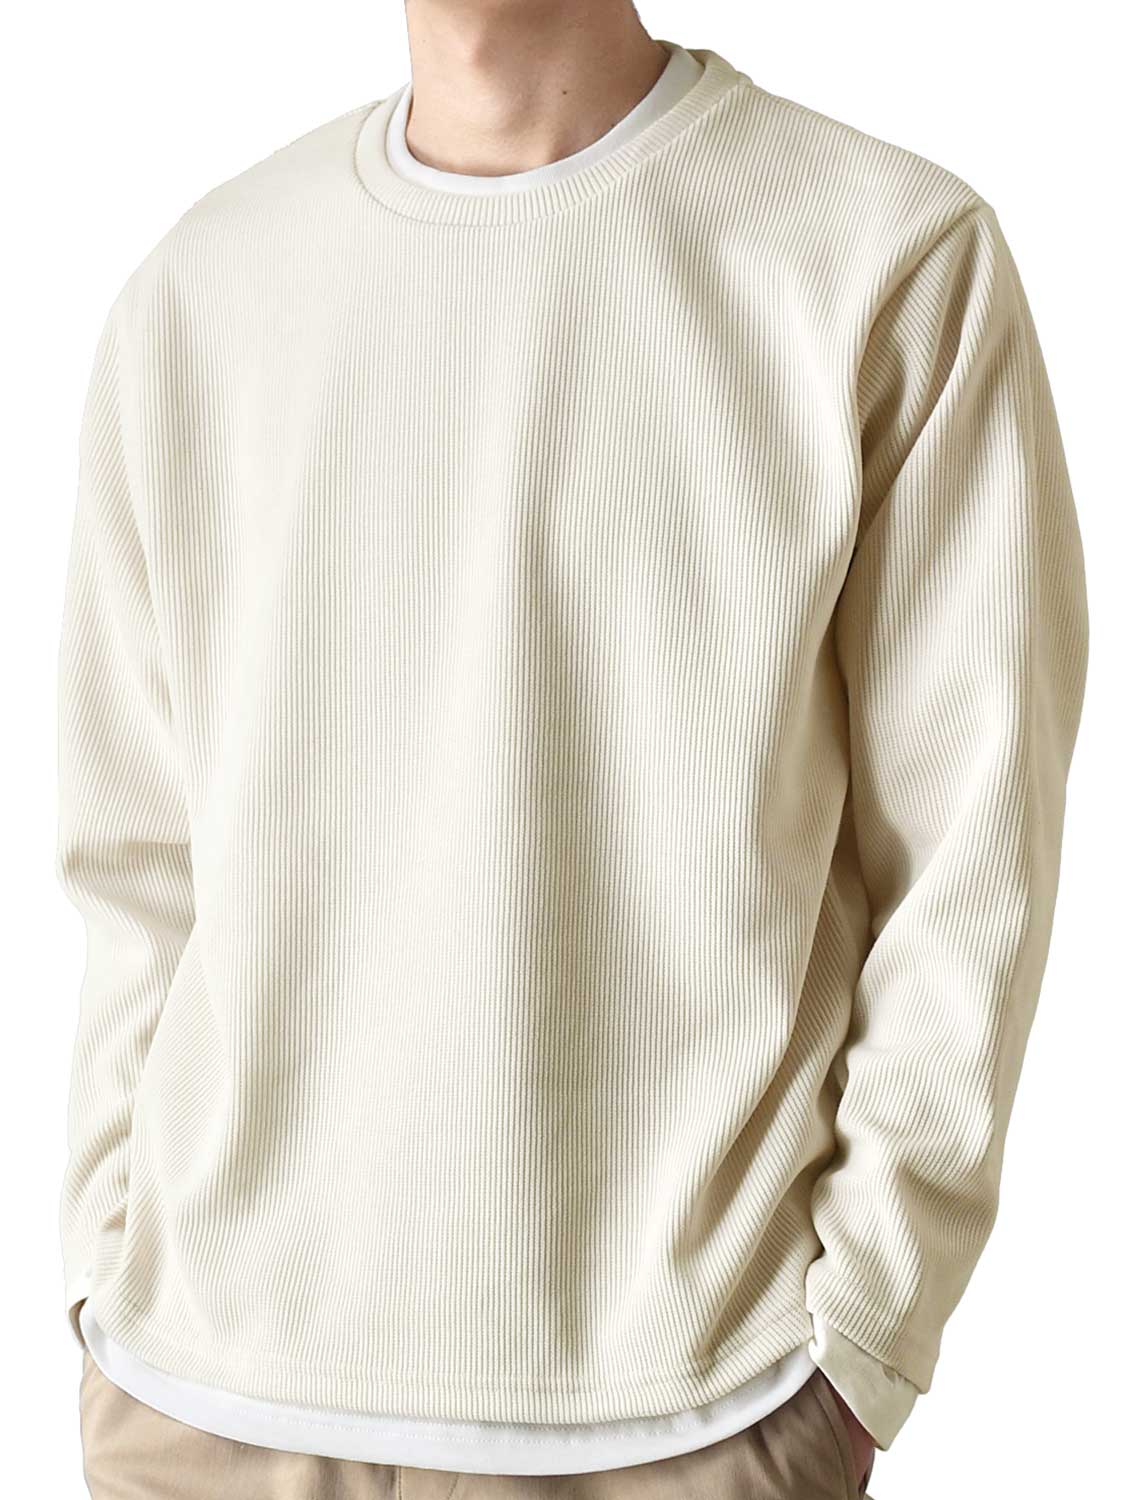 カットソー Tシャツ アンサンブル 長袖 2枚セット メンズ 重ね着 送料無料 通販YC レイヤード